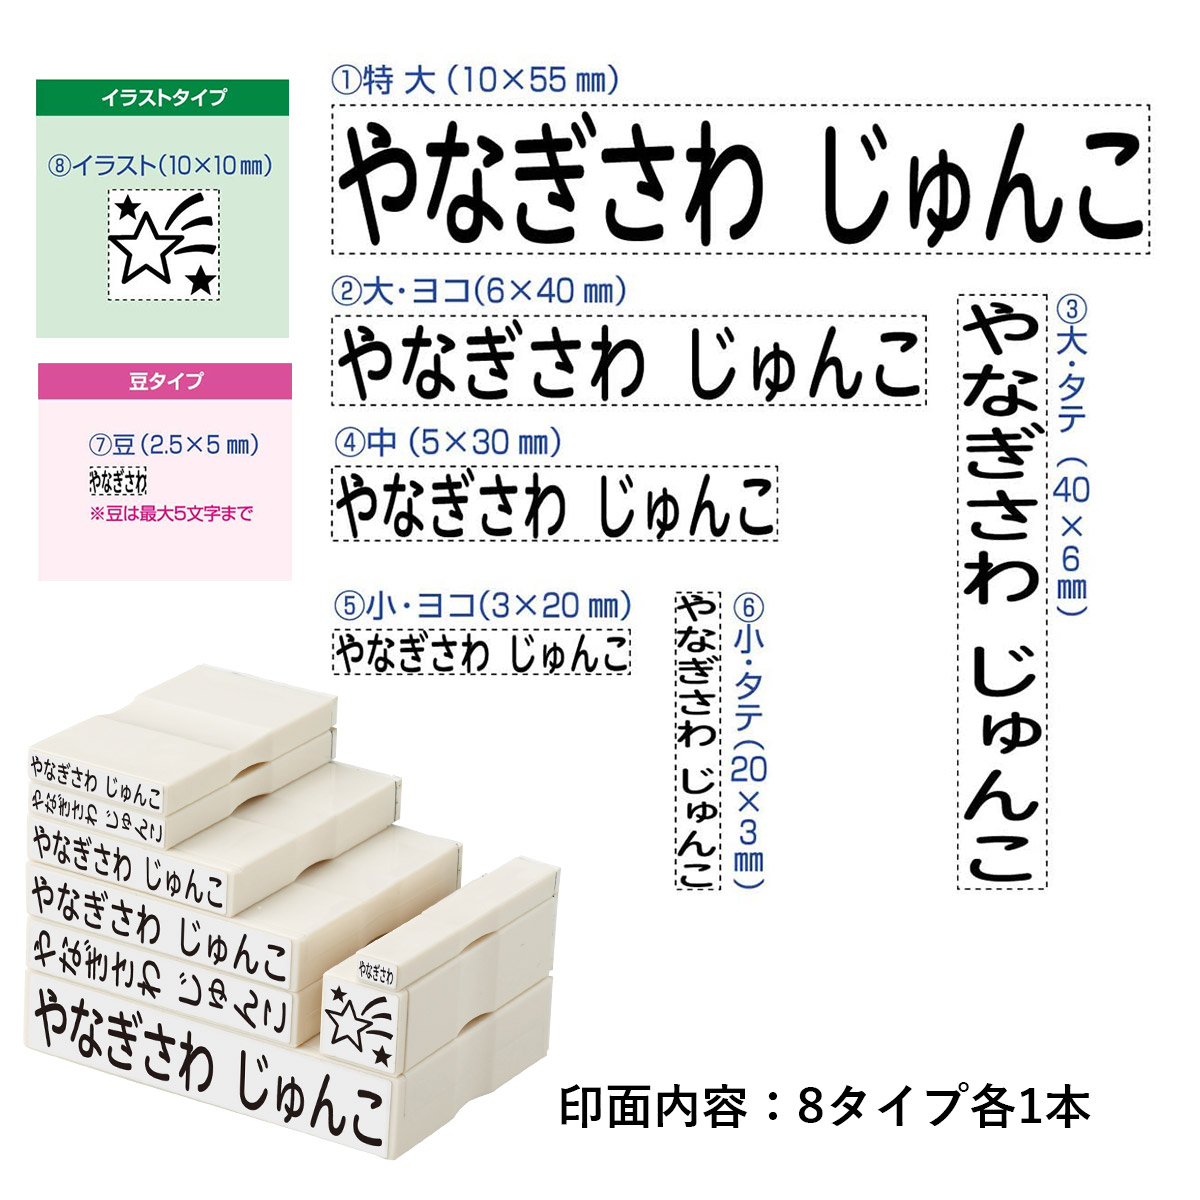 おなまえスタンプ 入学準備BOX【別注品】